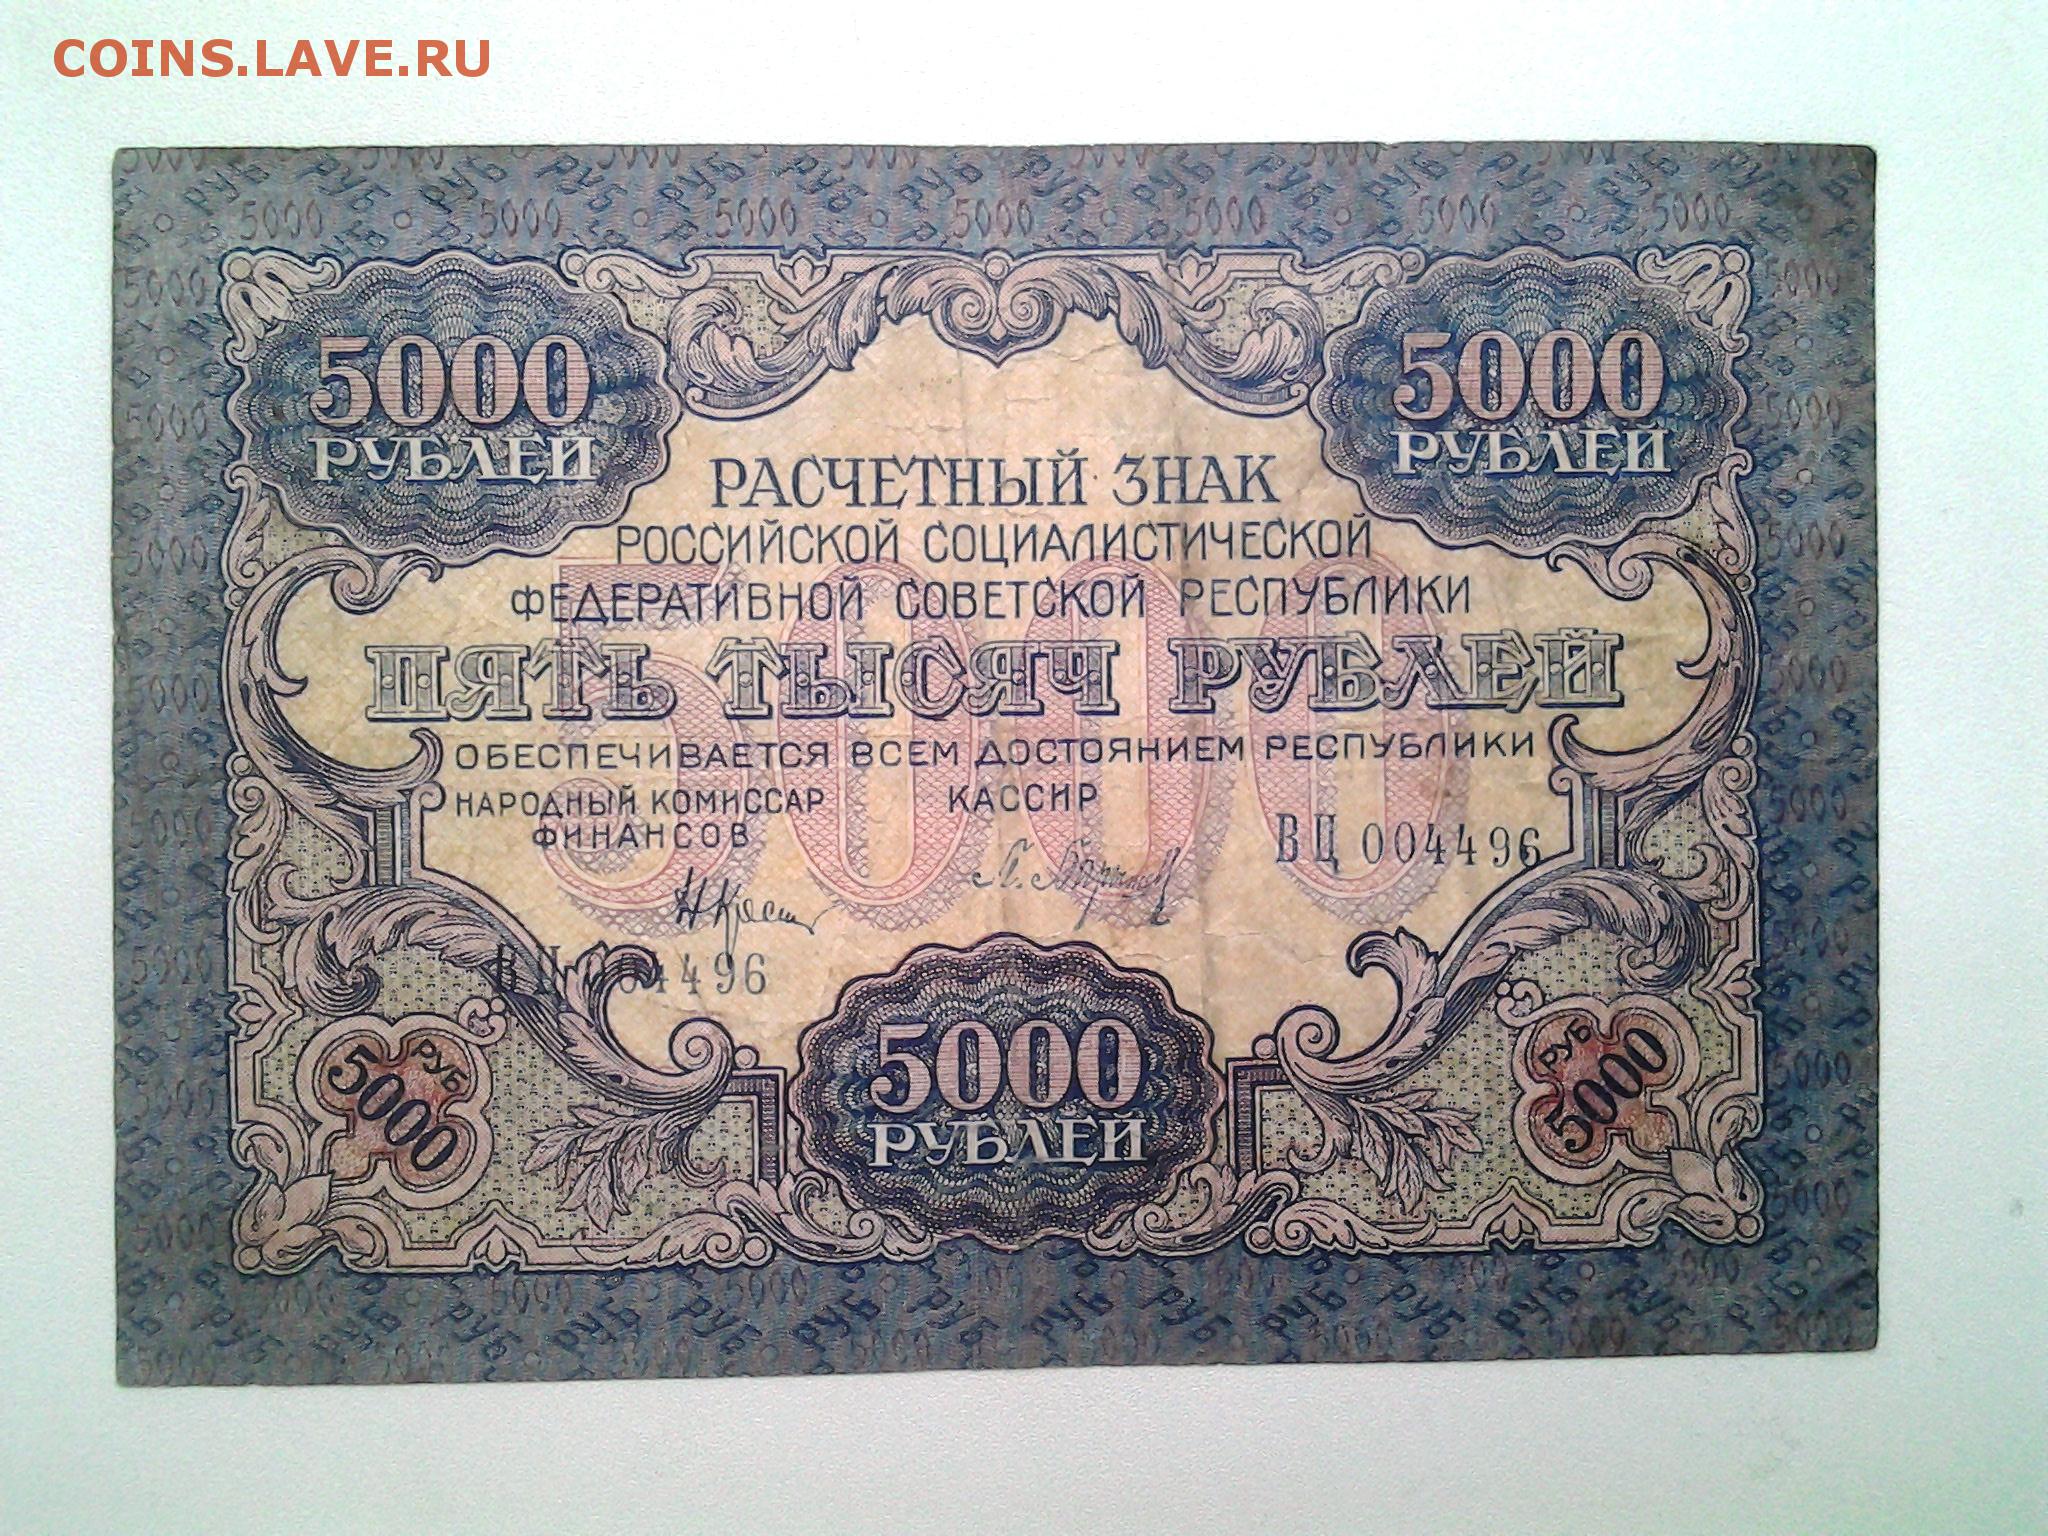 5000 рублей в драмах